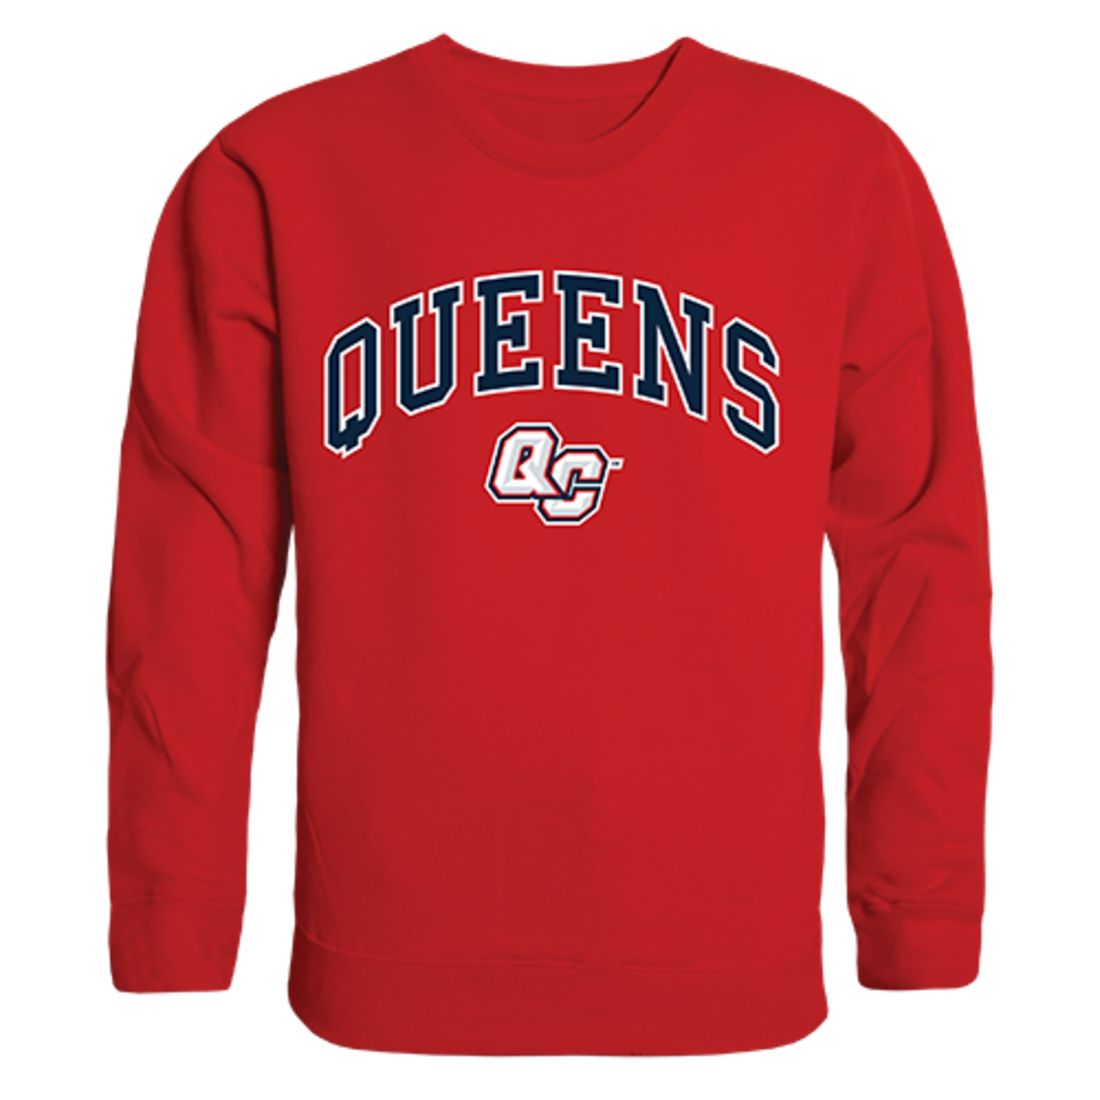 CUNY Queens College Campus Crewneck Pullover Sweatshirt Sweater Red-Campus-Wardrobe